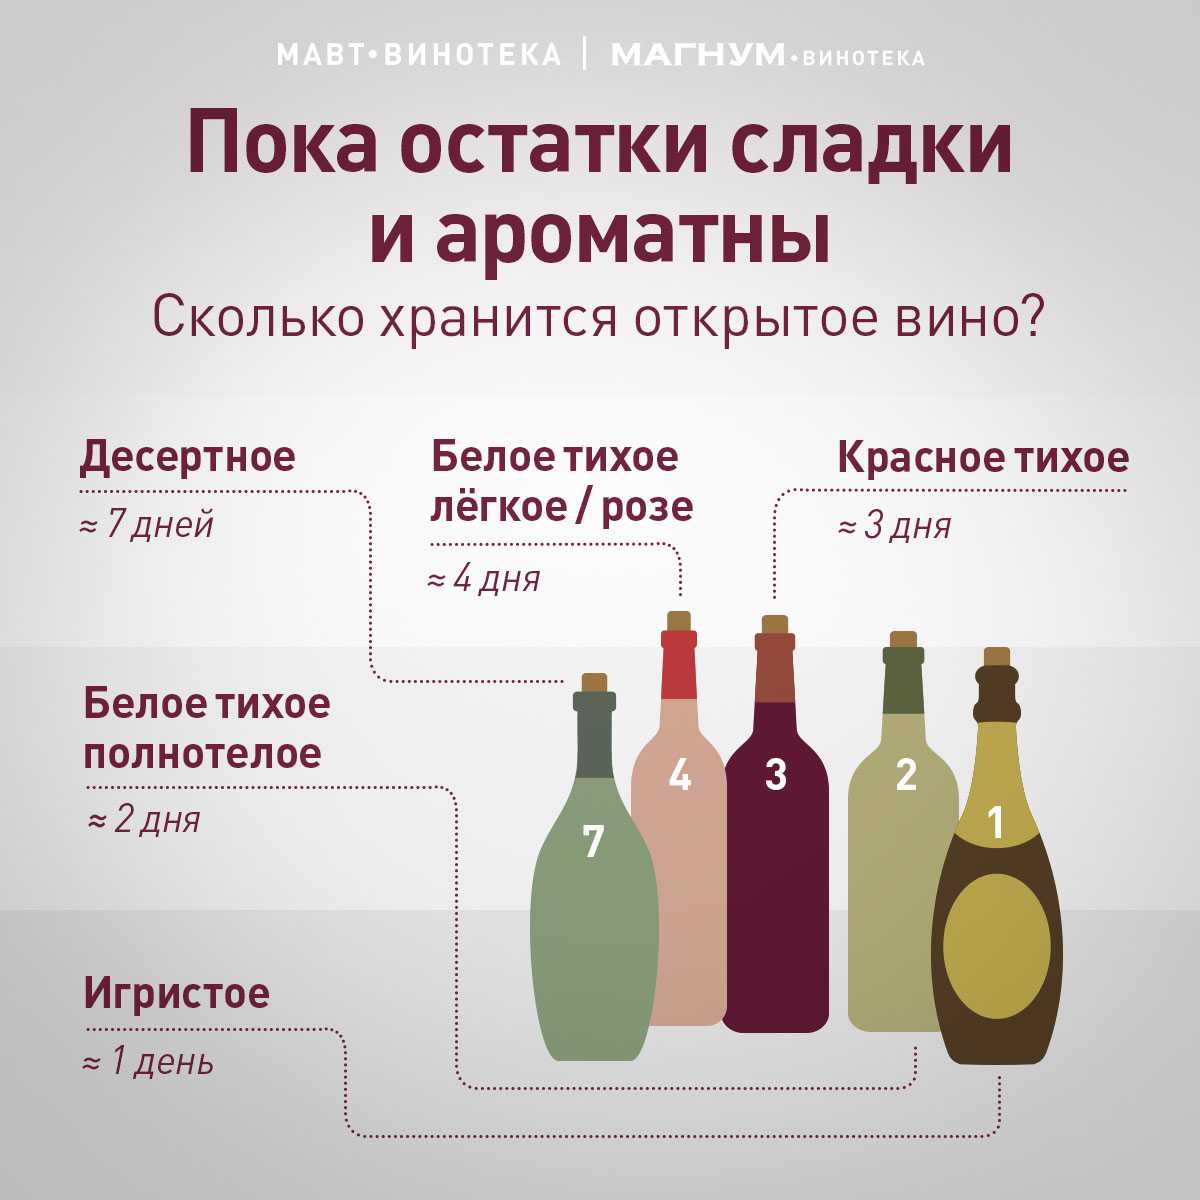 Влада лесниченко: «во вкусе вина можно почувствовать хрящики и рыбью чешую»